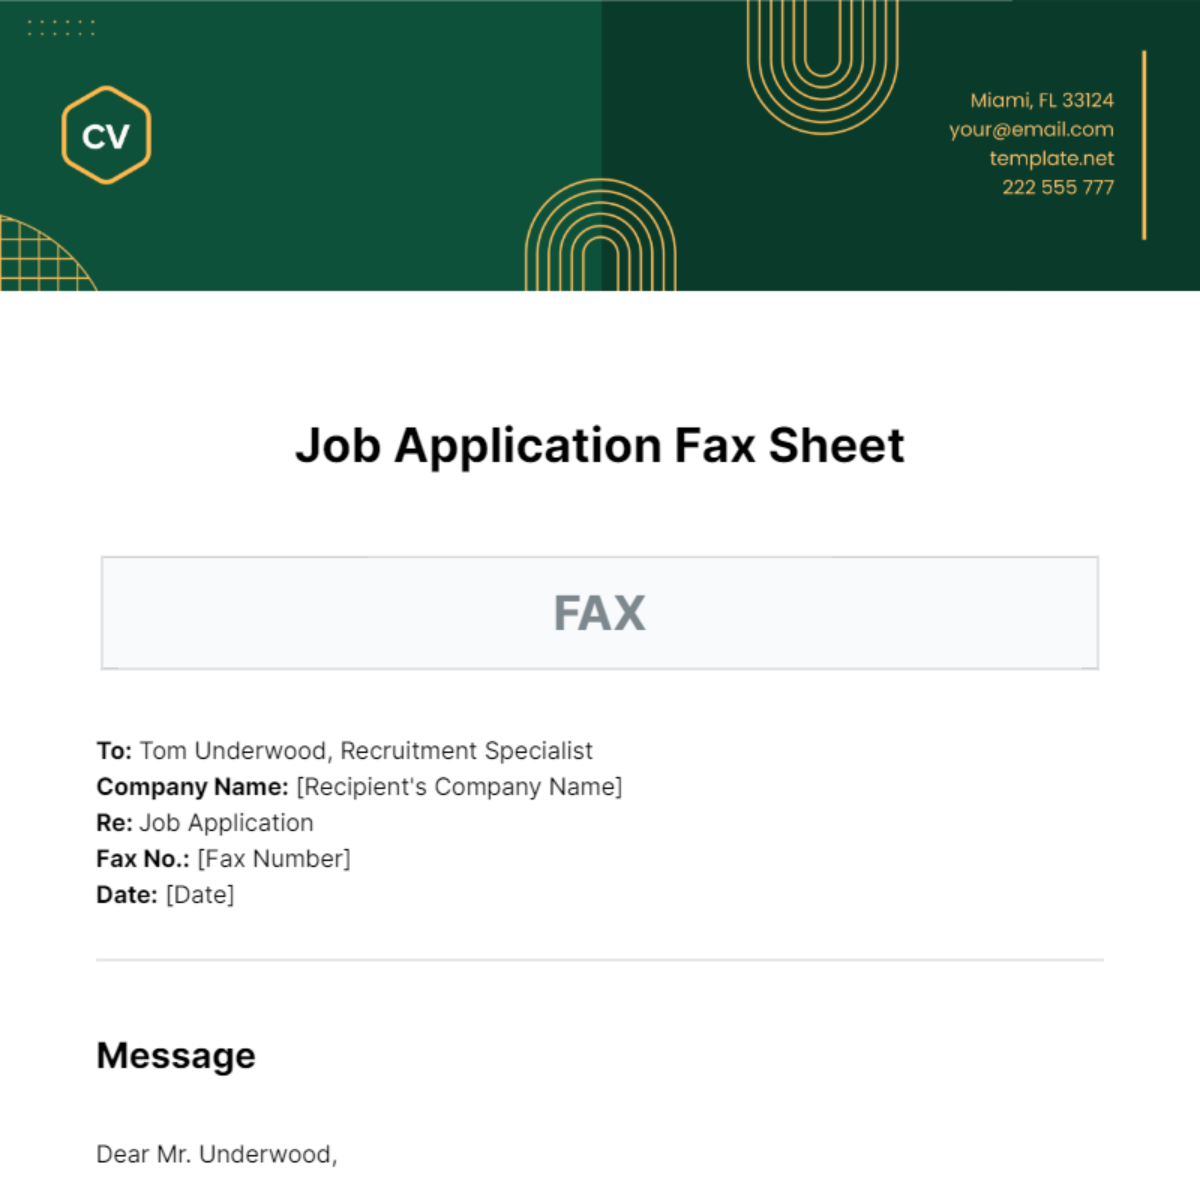 Job Application Fax Sheet Template